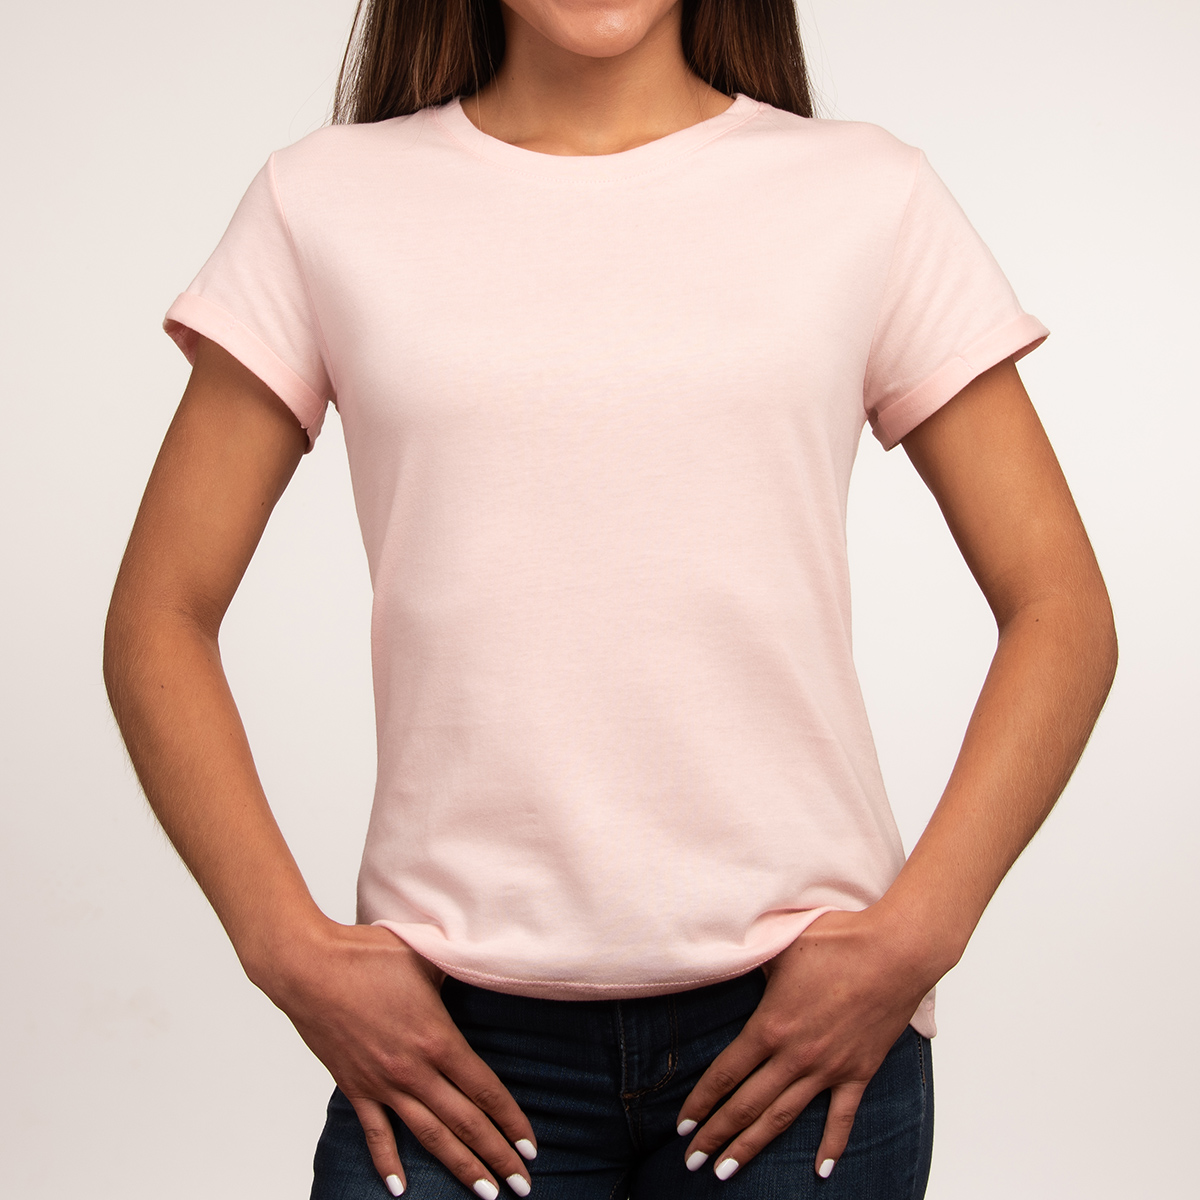 Diseño de camiseta rosa liso women039s con vistas frontal y